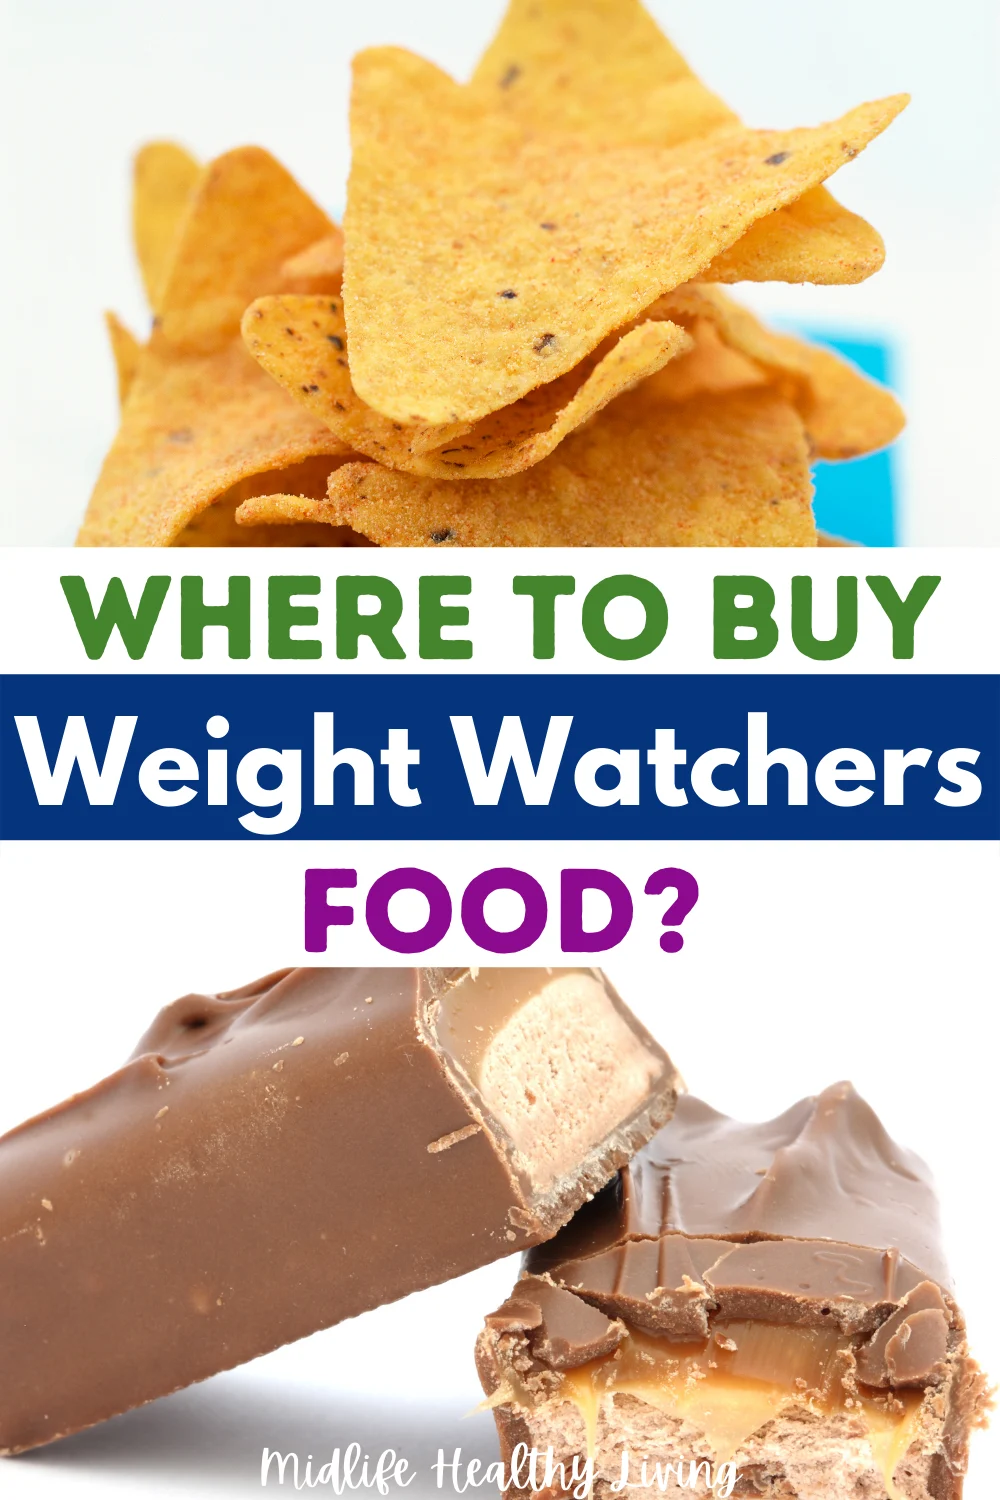 Weight Watchers, Kitchen